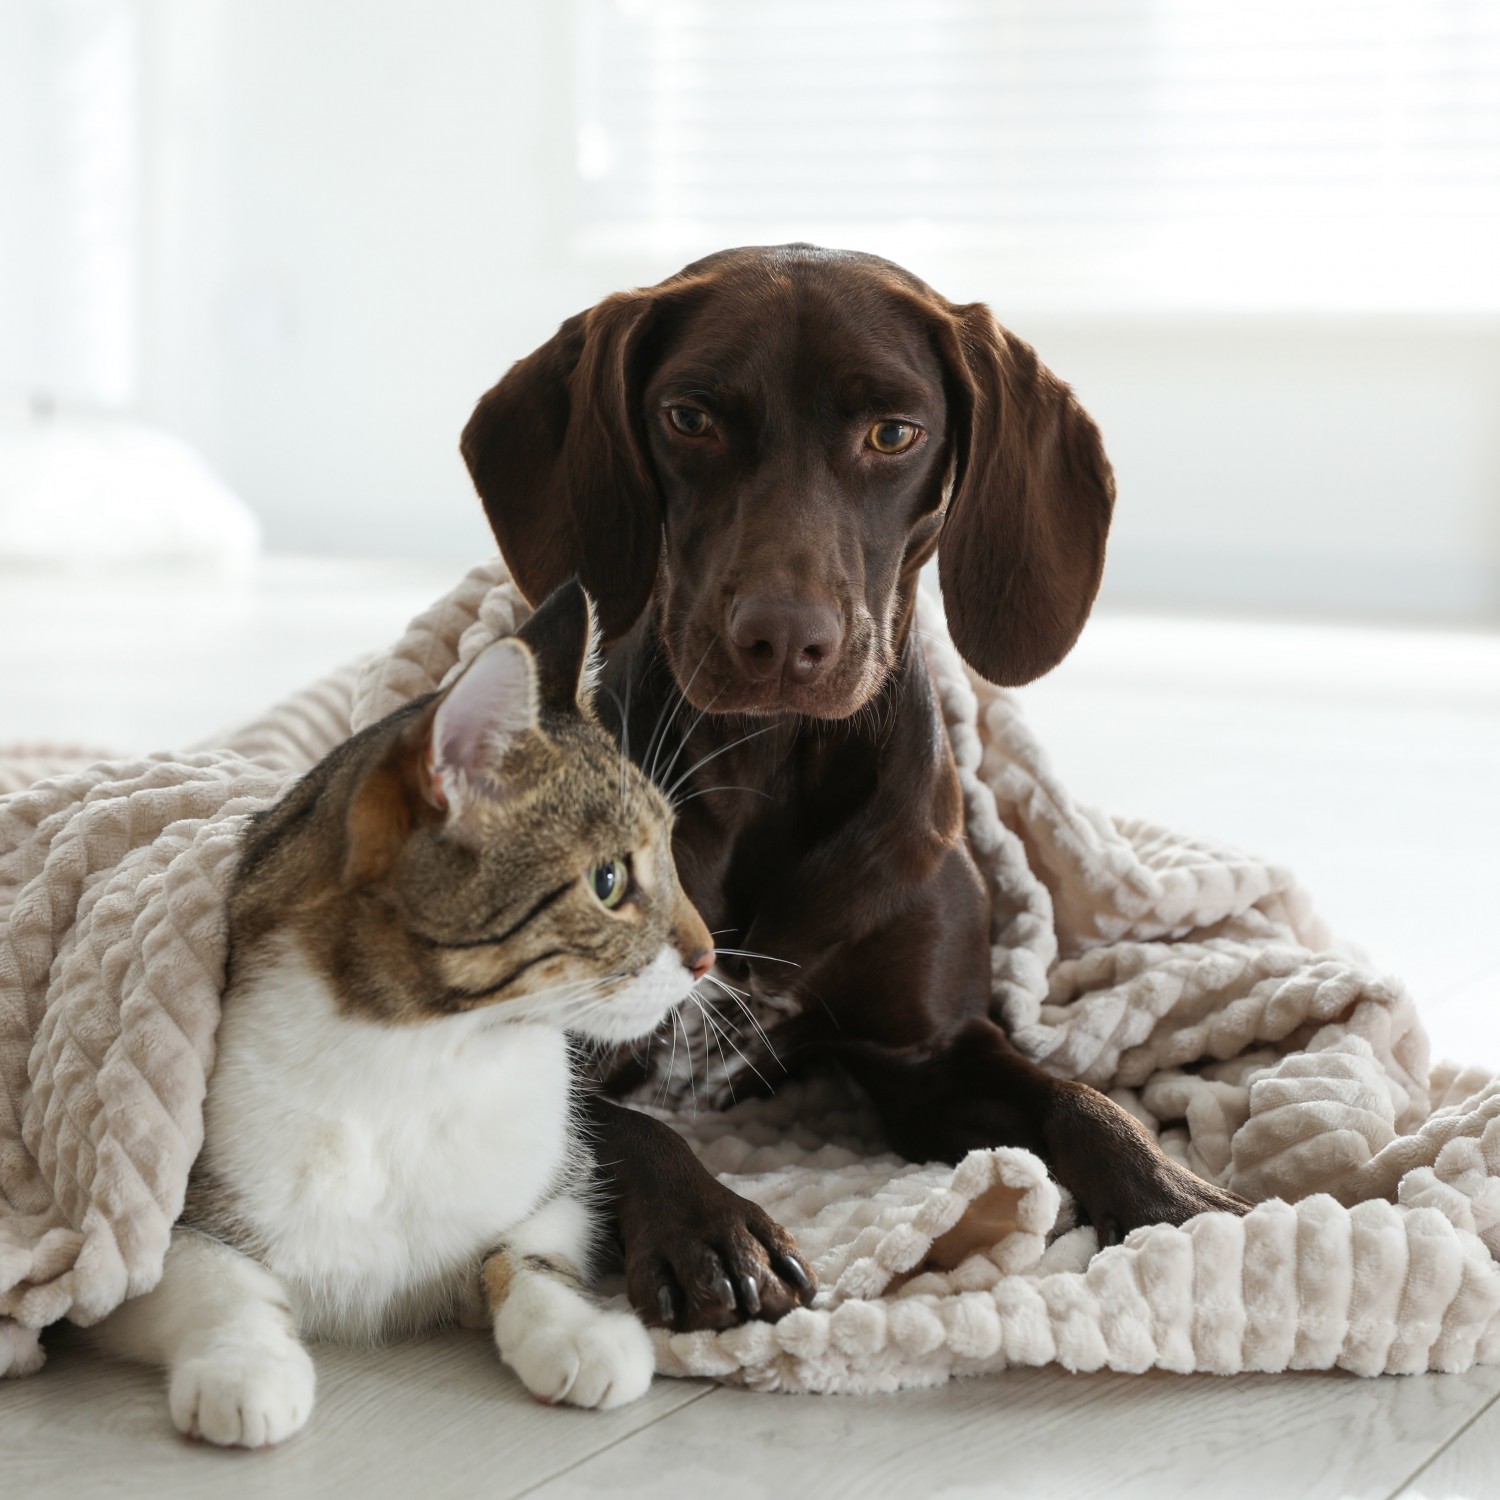 Puppy and Kitten under a blanket